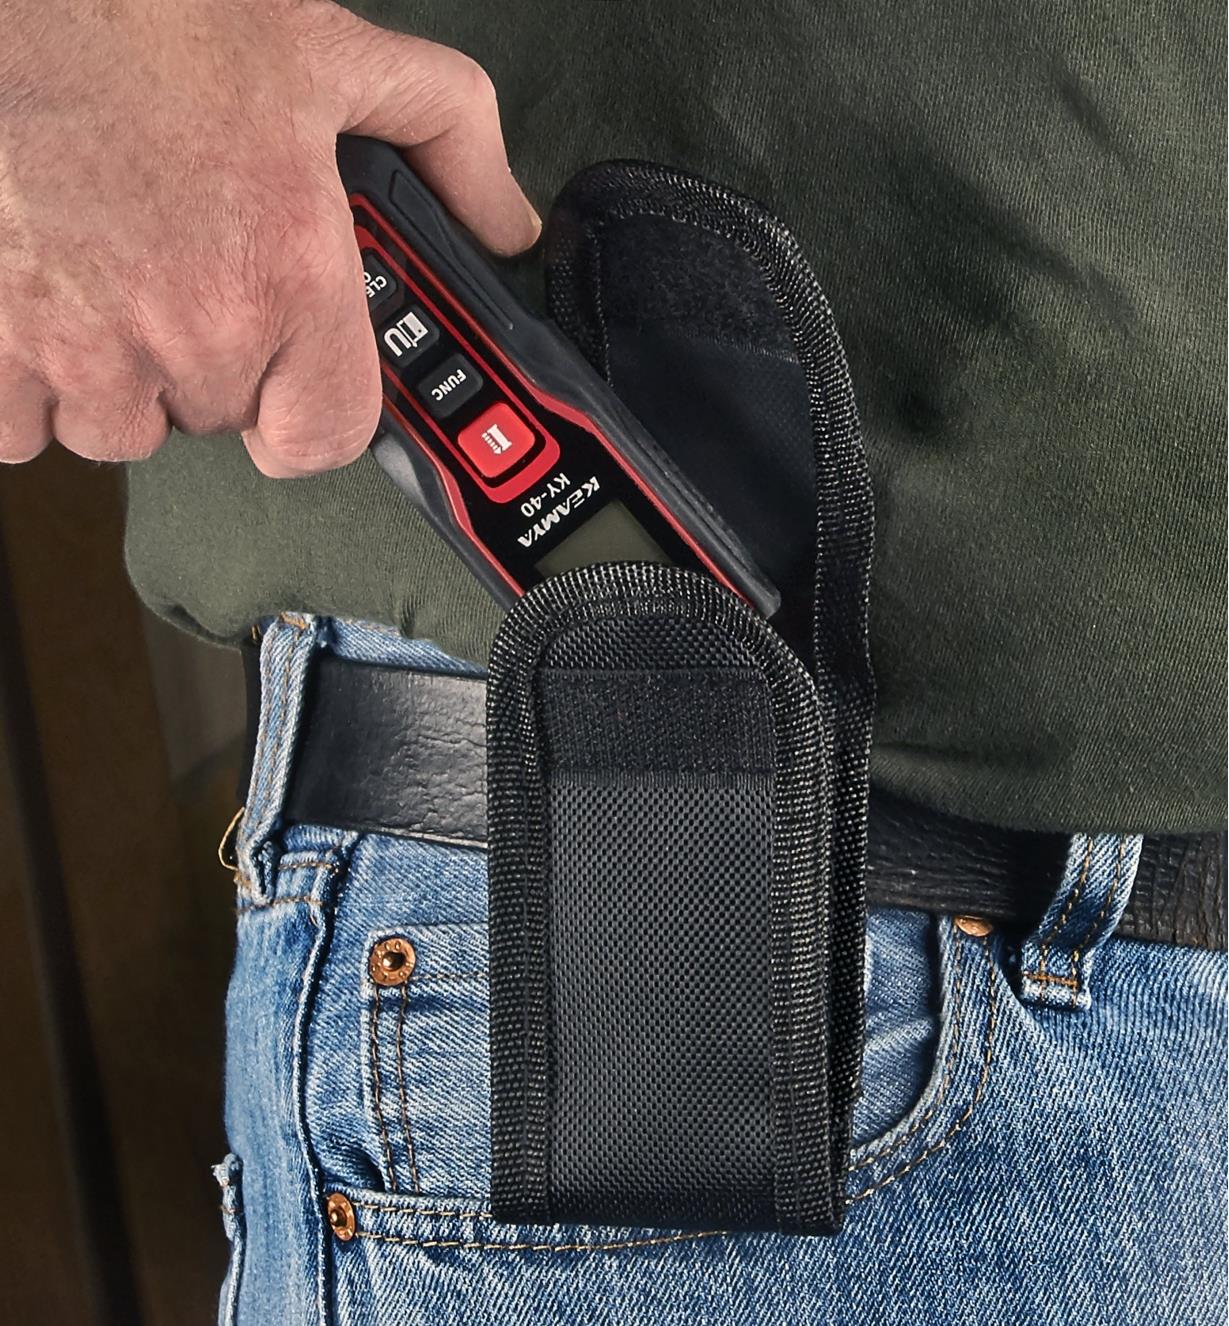 A pocket laser measure is being slid into a belt holster